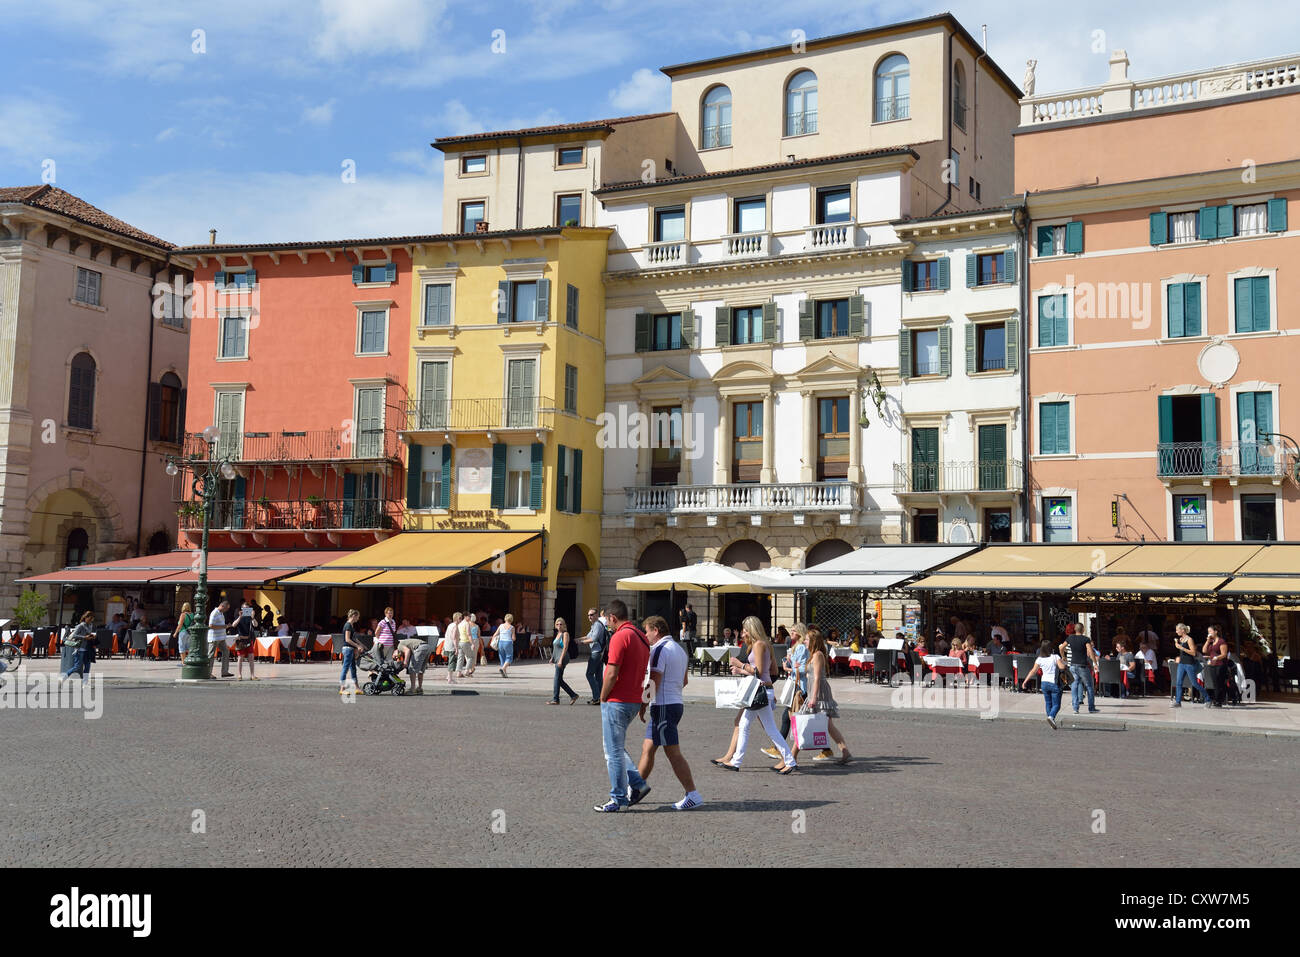 Restaurantes al aire libre, la Piazza Bra, Verona, provincia de Verona, Región de Véneto, Italia Foto de stock